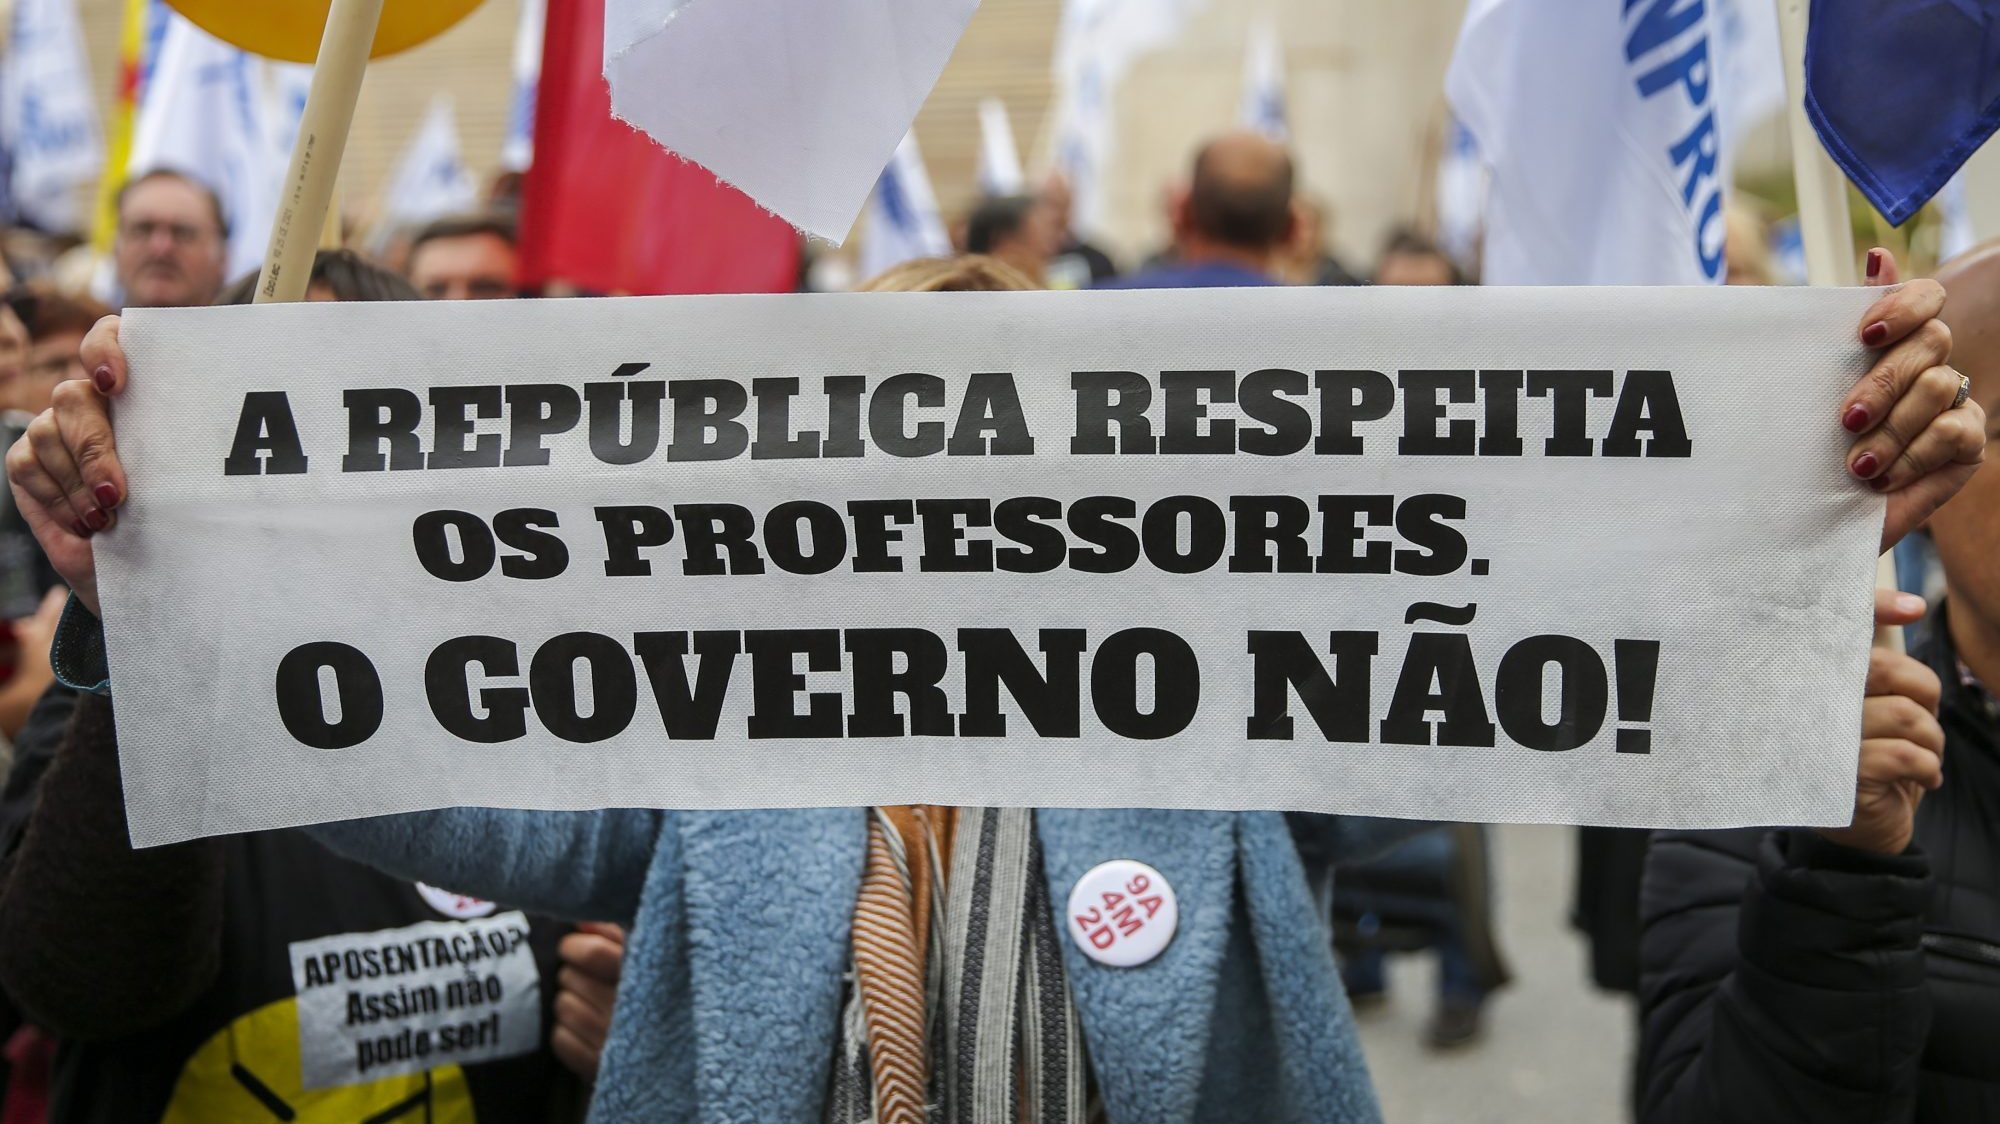 A Federação Nacional dos Professores (Fenprof), que organiza o protesto, acusa a tutela de inação no que toca a melhorias na carreira